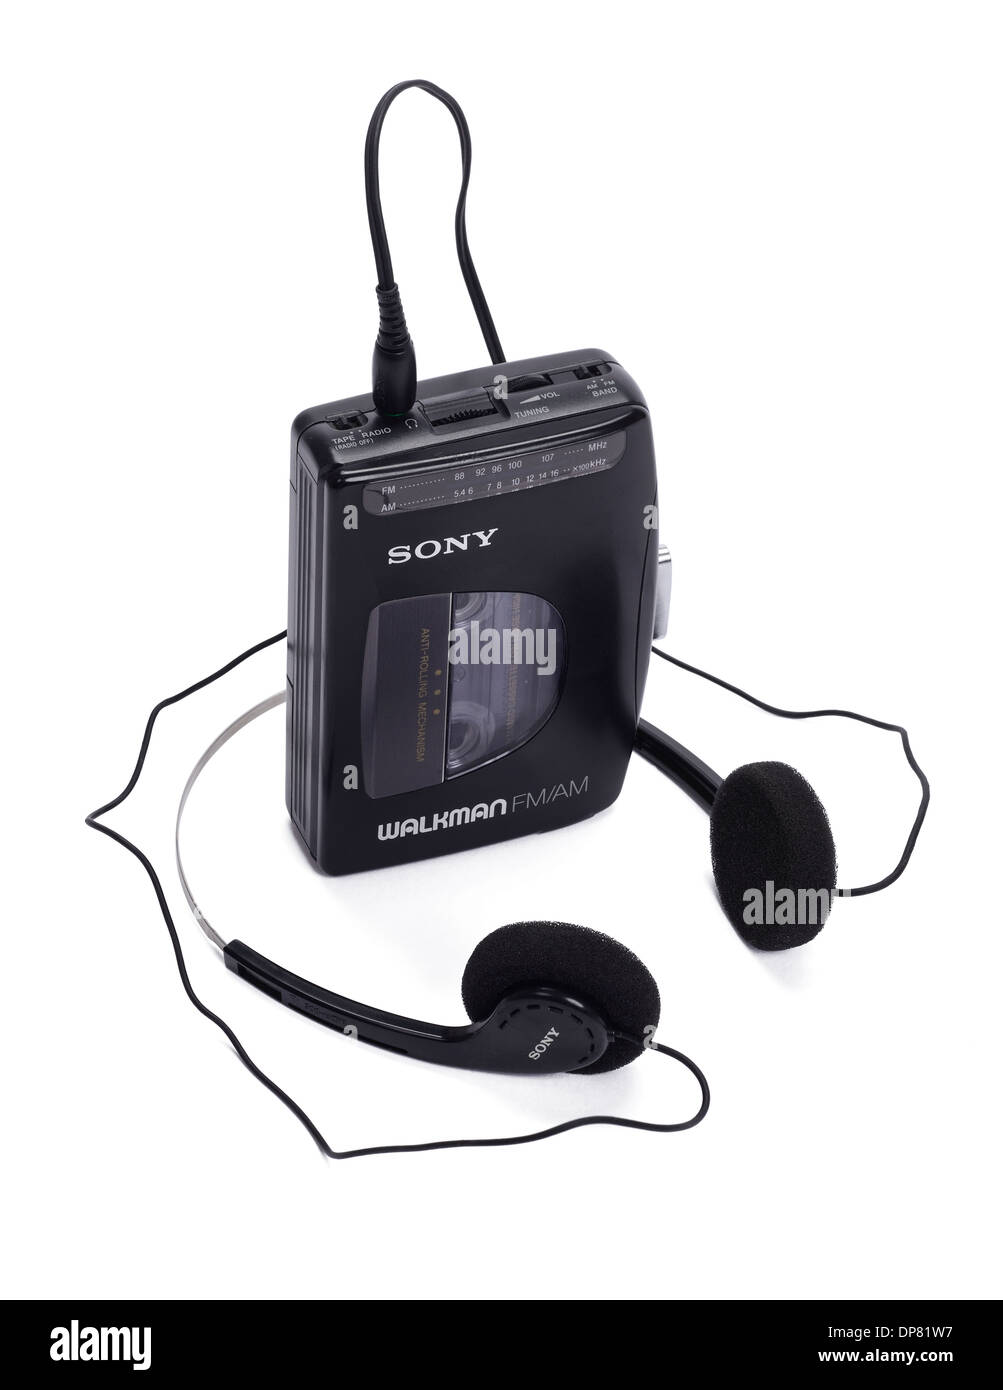 Sony Walkman reproductor de casetes y radio desde la década de 1980 Foto de stock